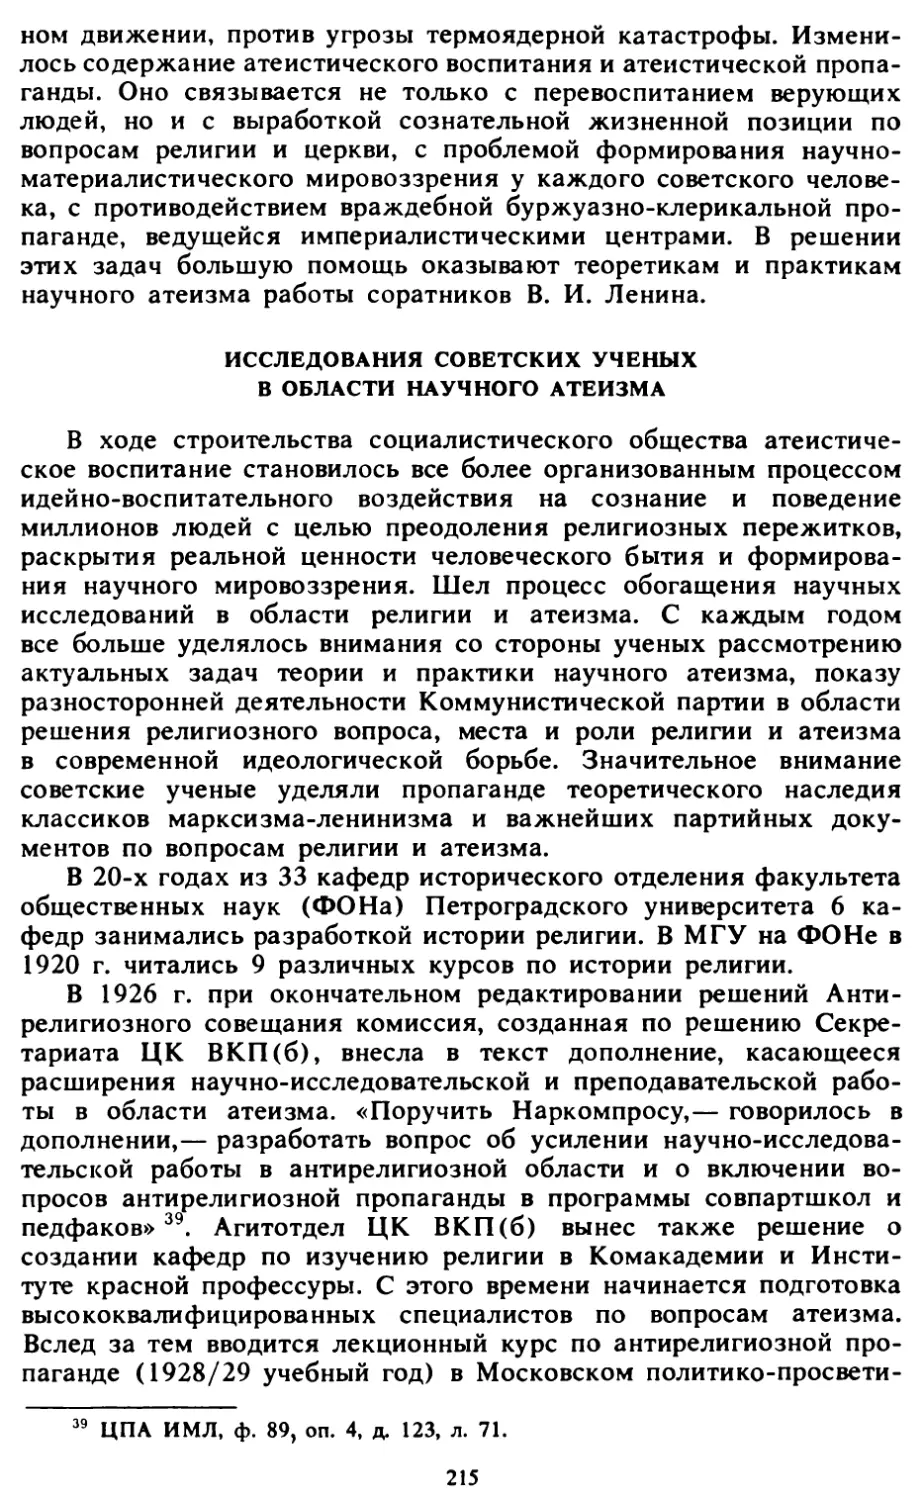 Исследования советских ученых в области научного атеизма